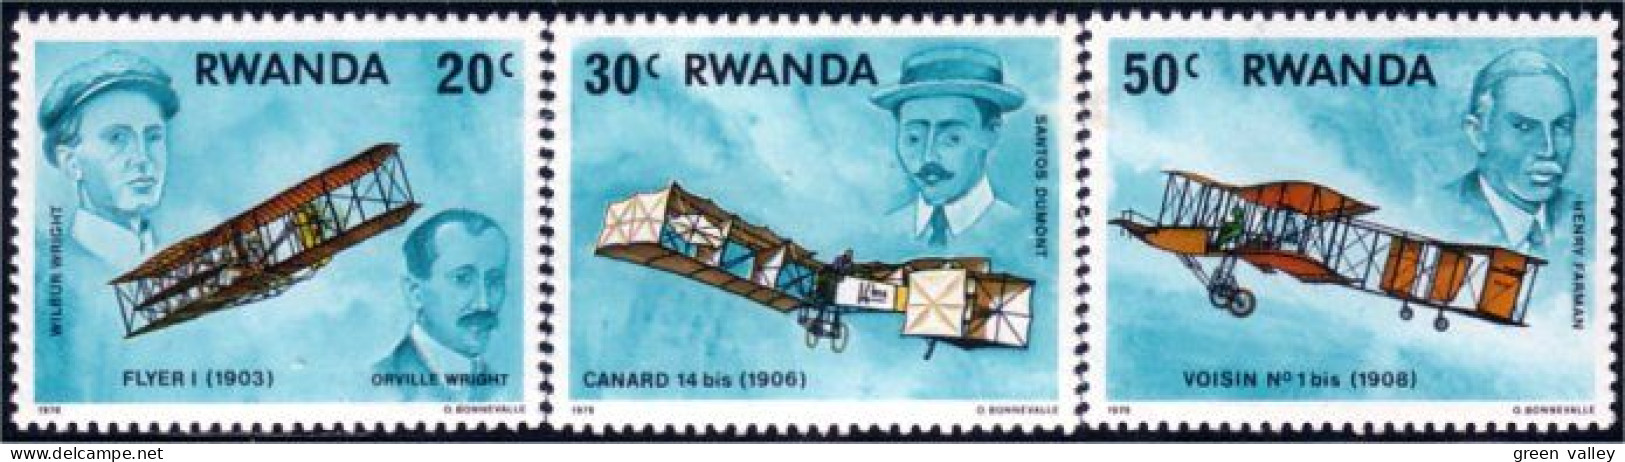 777 Rwanda Avions Airplanes MNH ** Neuf SC (RWA-109) - Airplanes